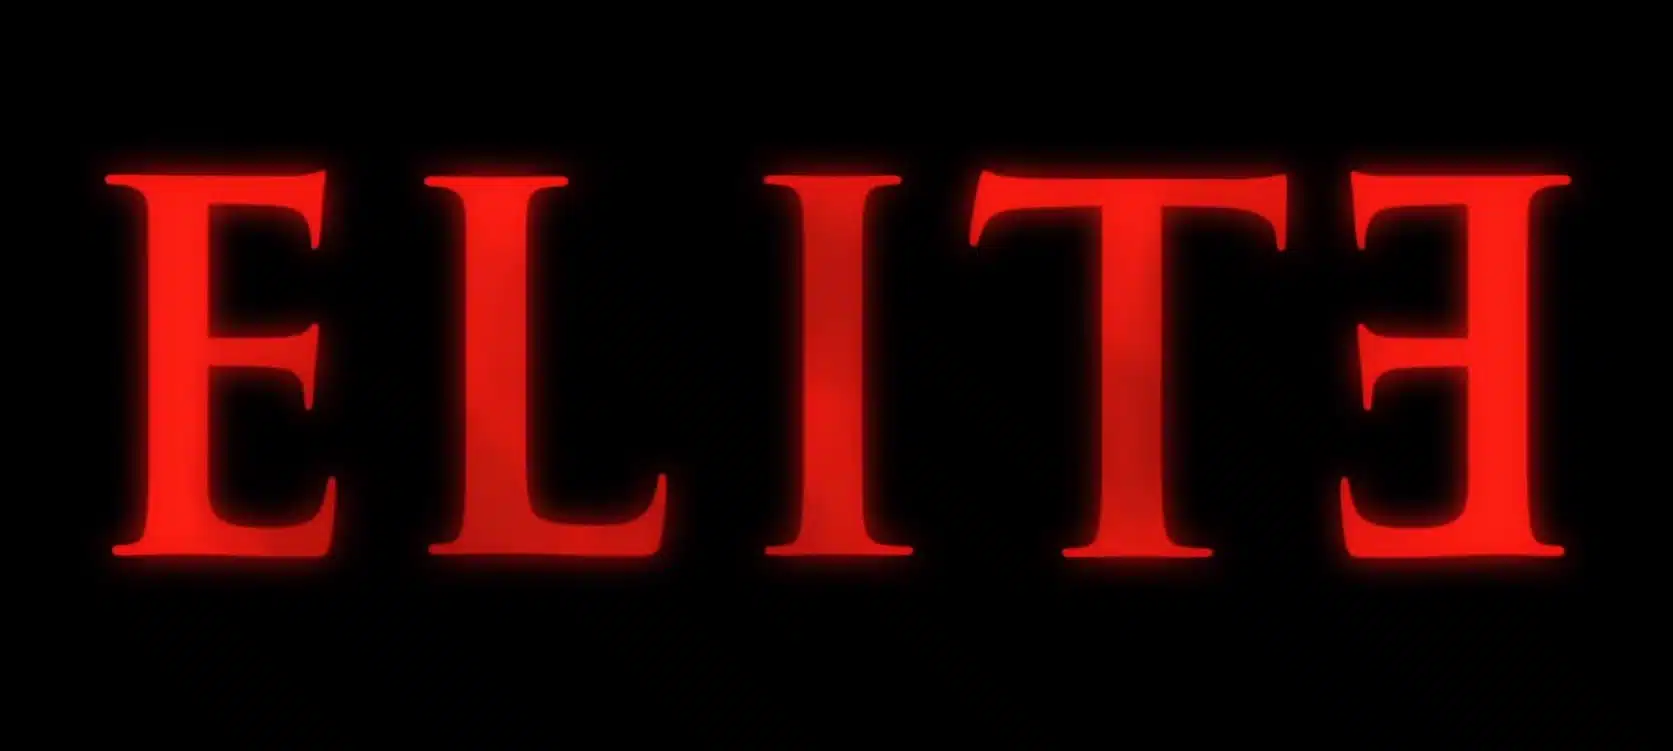 Elite 3 trama, cast, anticipazioni serie tv. Quando esce su Netflix